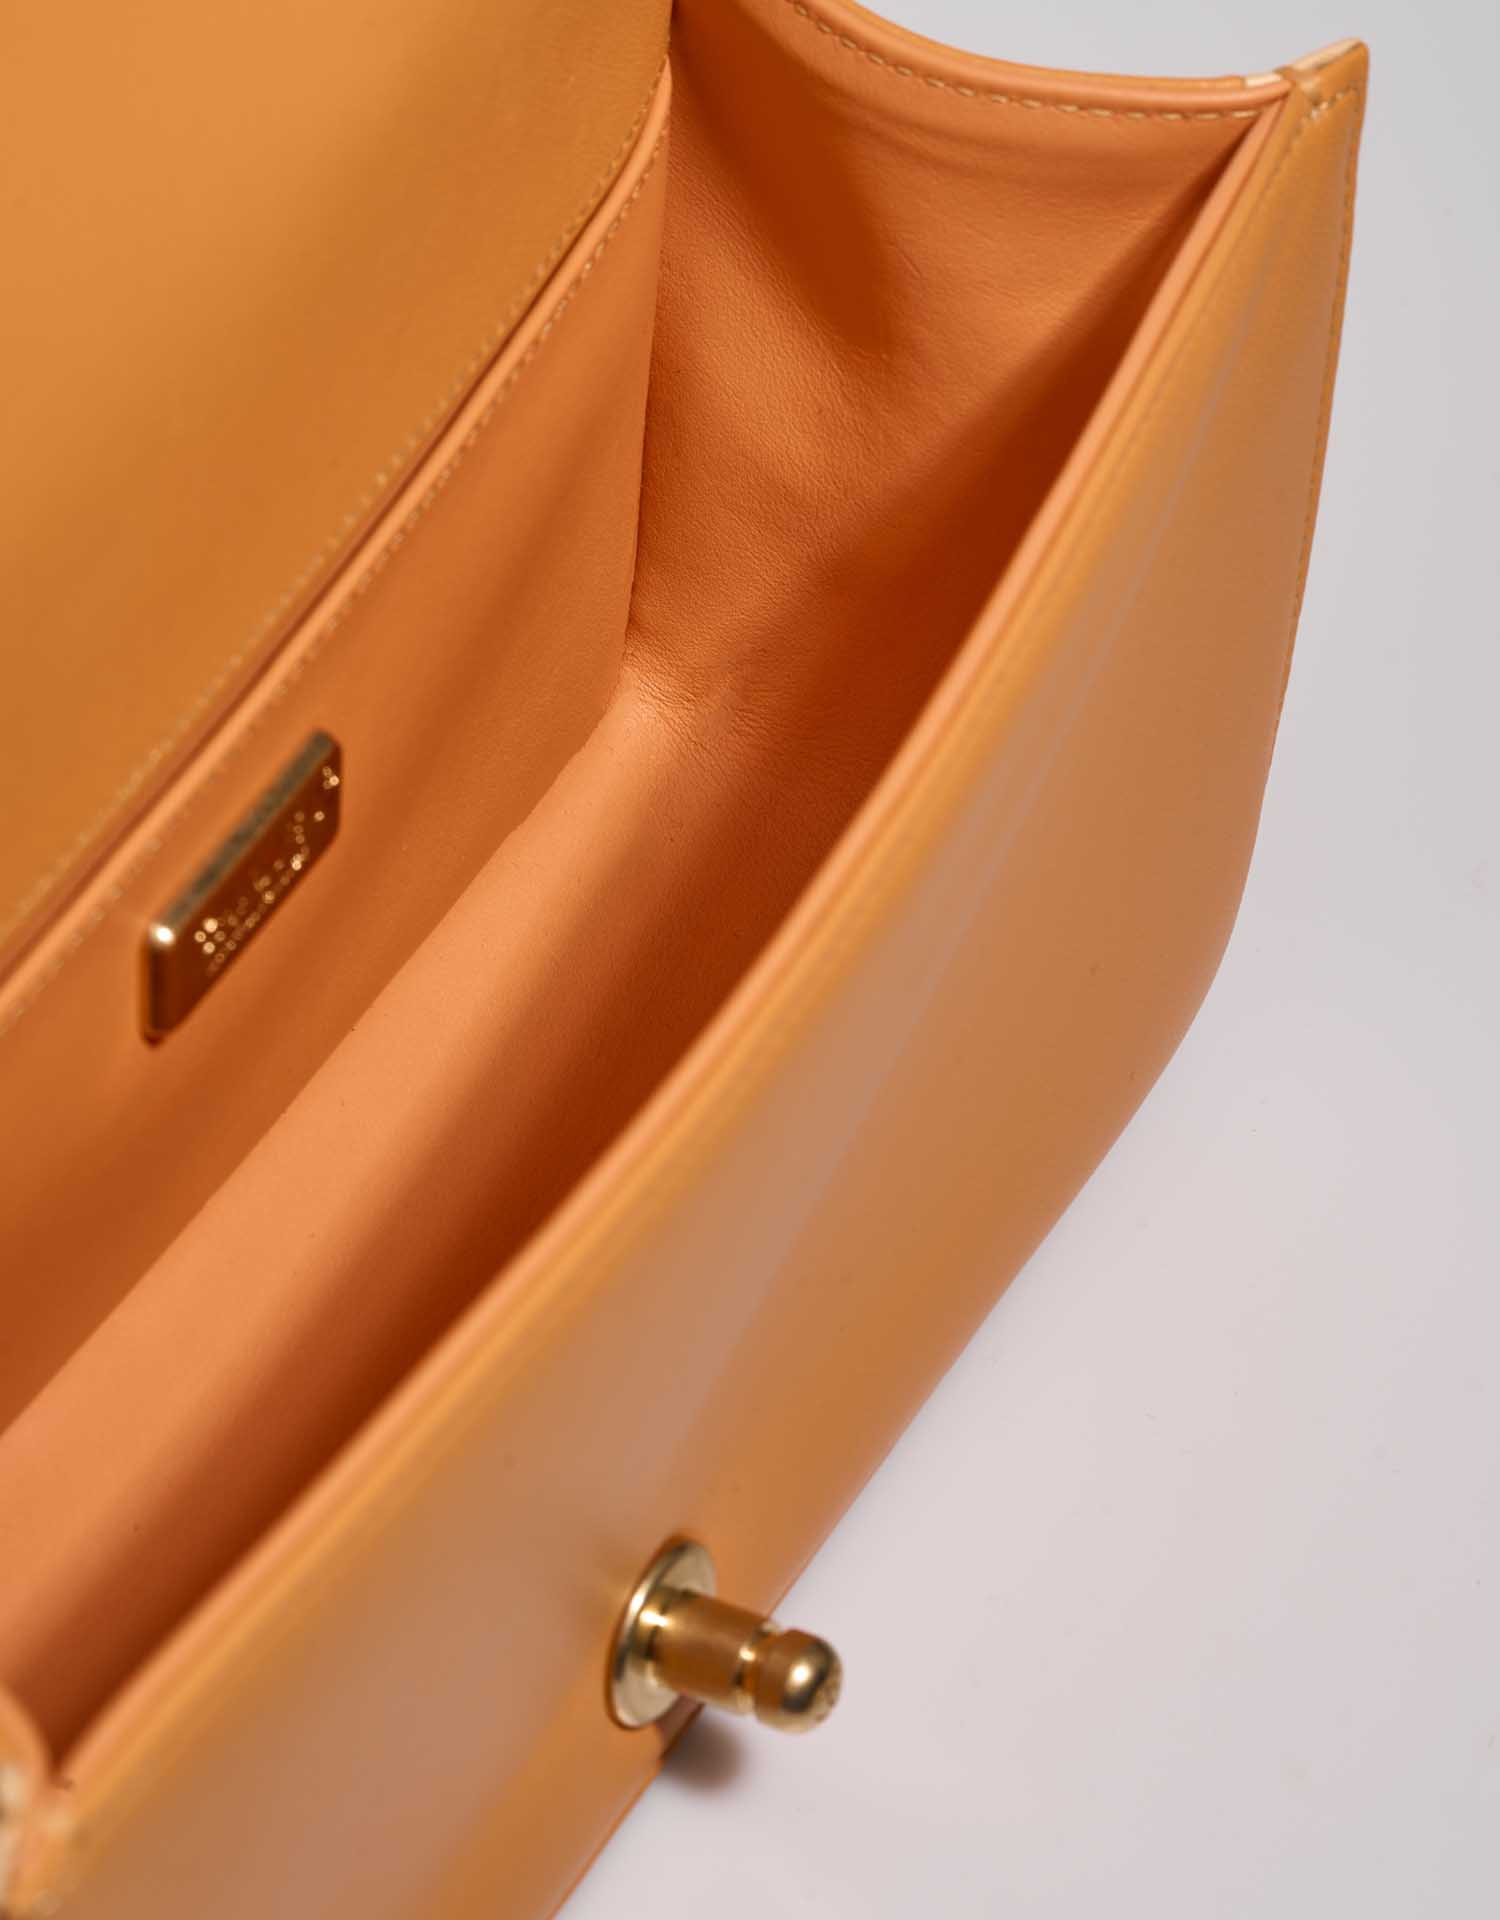 Chanel Boy OldMedium Orange-Multicolor Inside | Verkaufen Sie Ihre Designer-Tasche auf Saclab.com